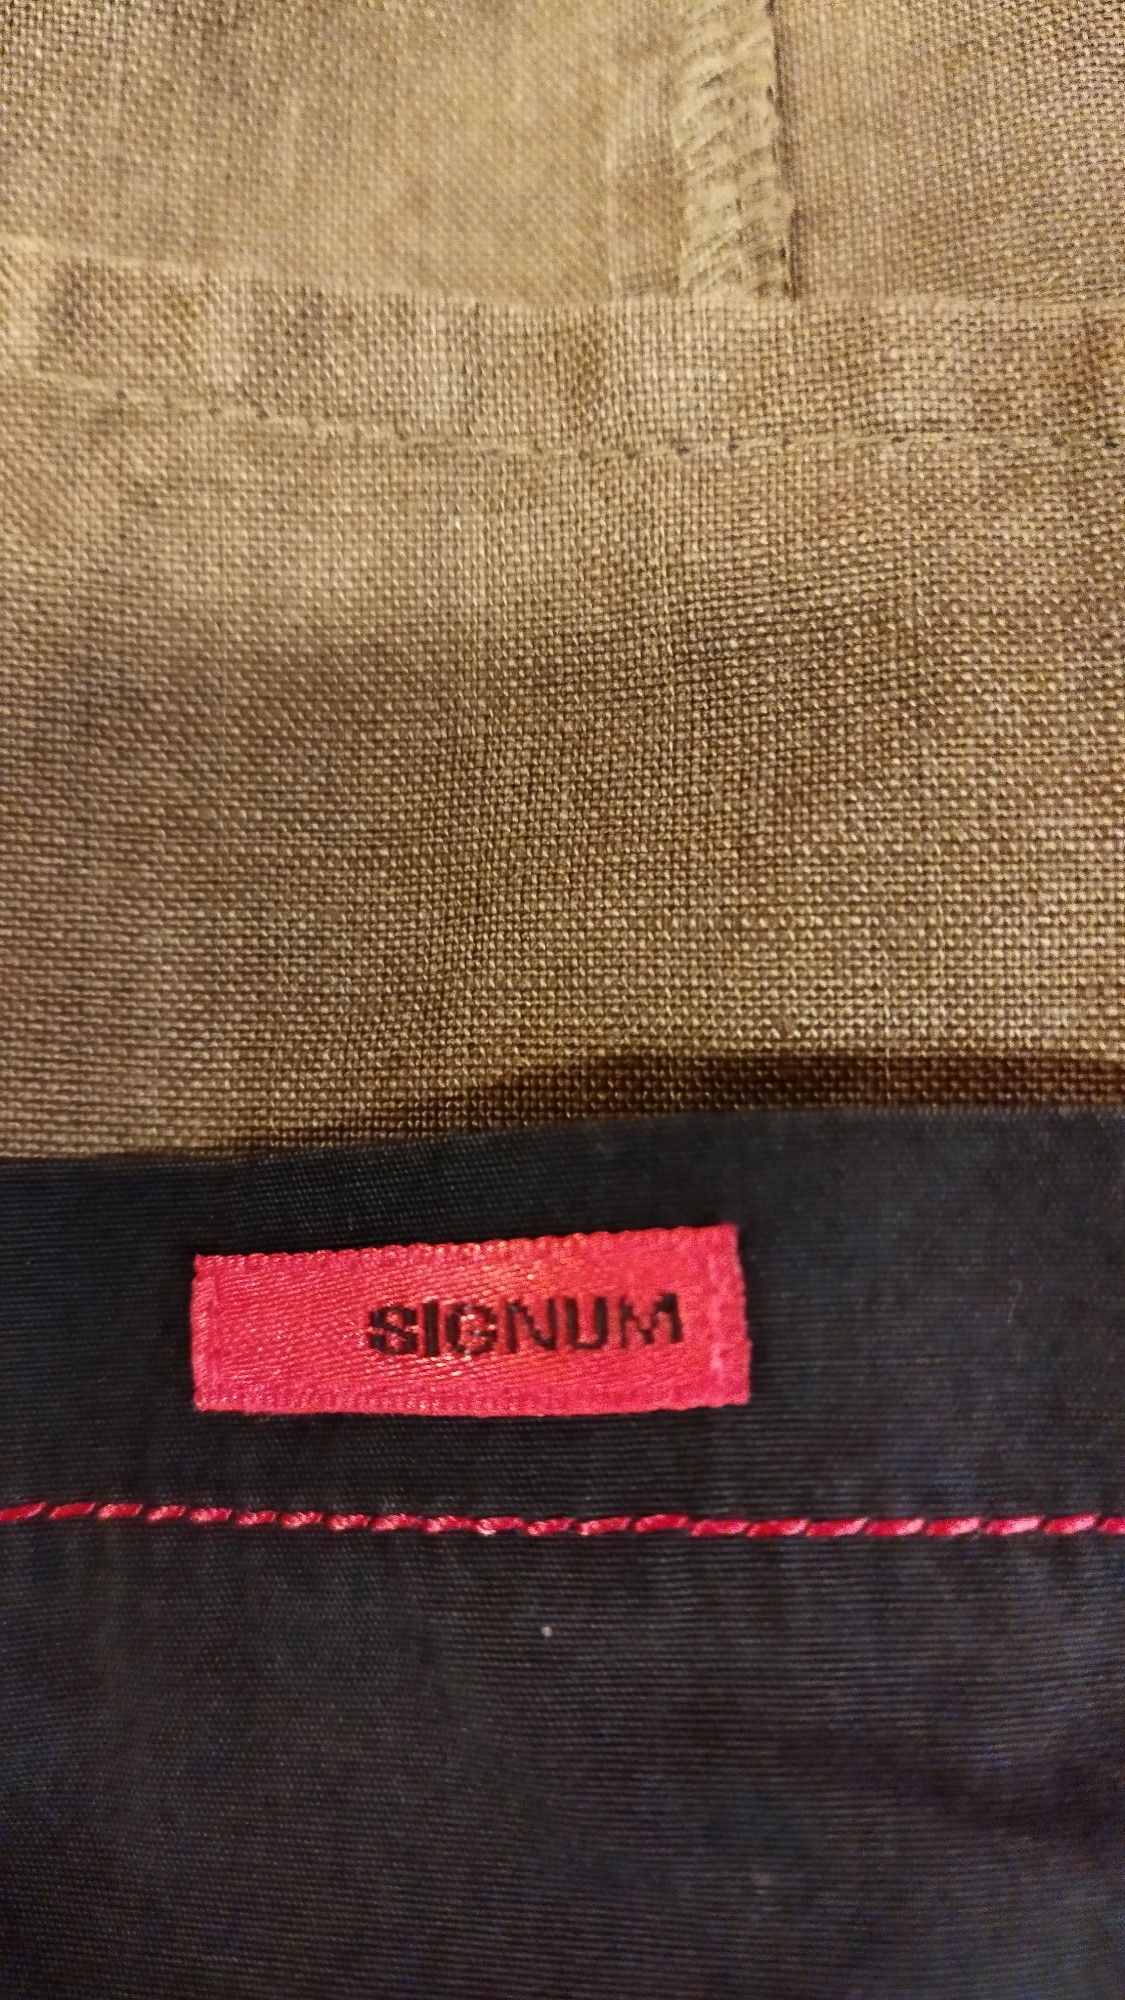 Ветровка  мужская легкая пиджачного типа   бренд  Signum р.М